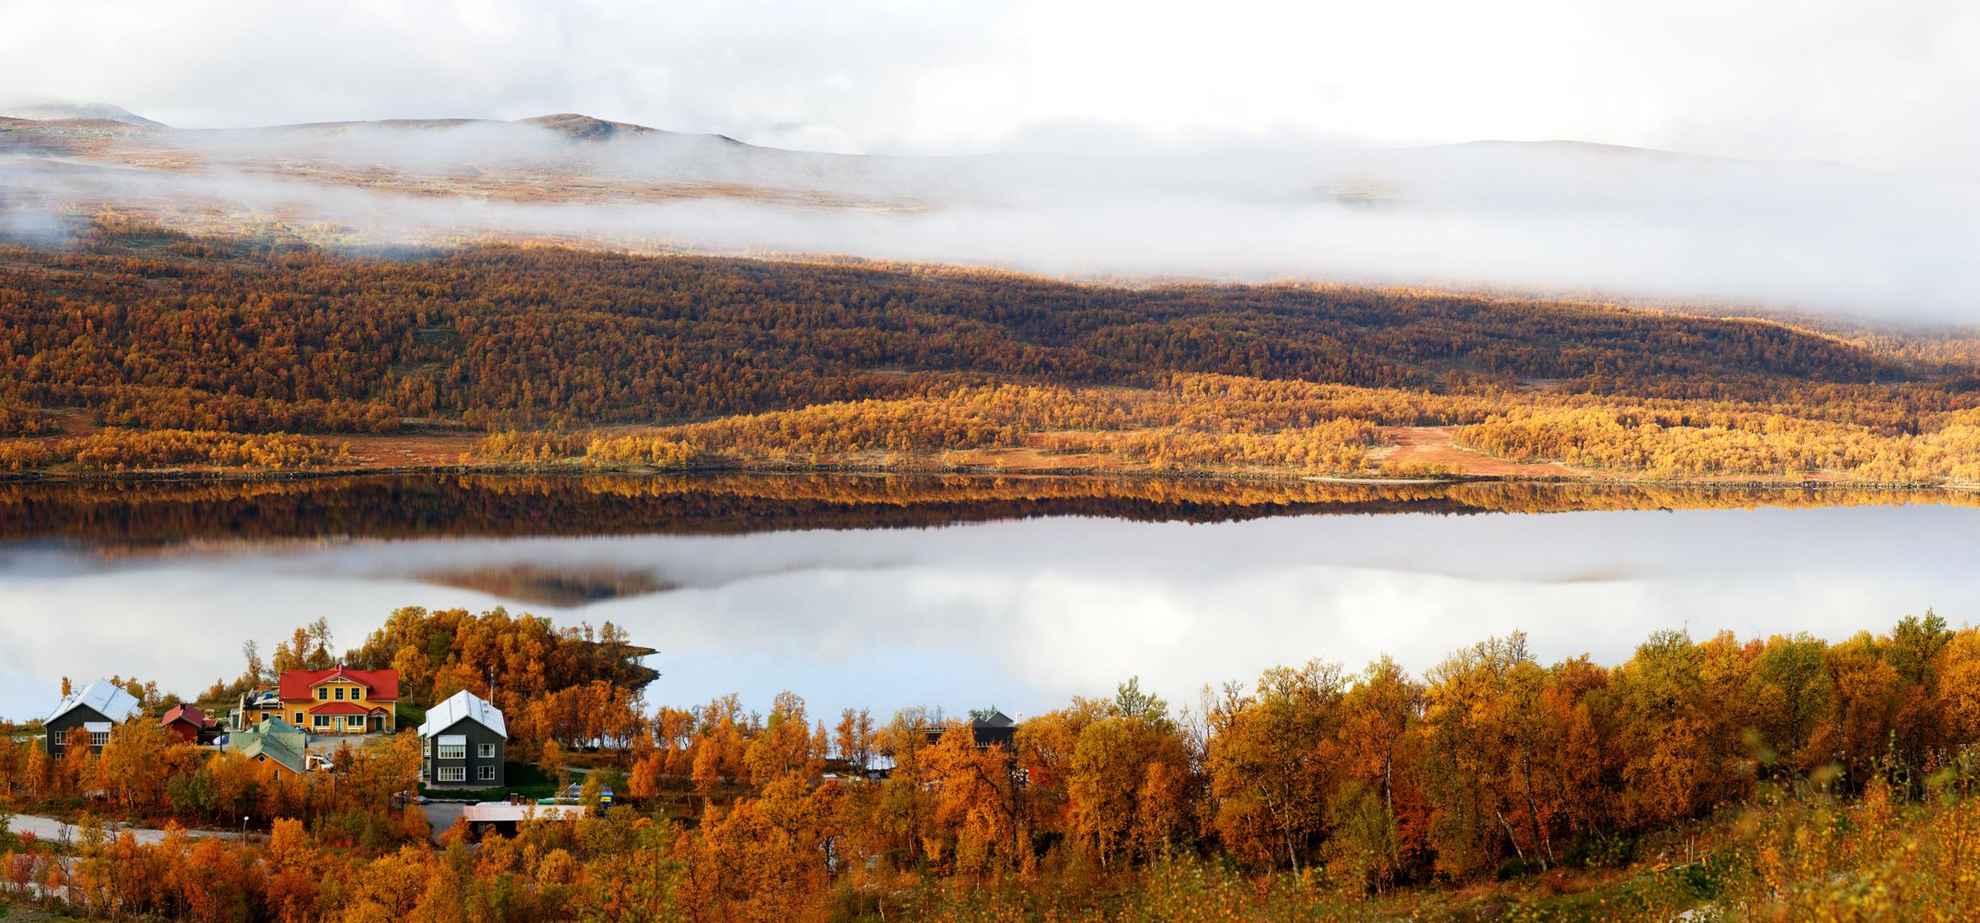 Une vue automnale panoramique sur un hôtel situé à côté d'un lac et des montagnes. Les arbres sont orange et il y a du brouillard sur les montagnes situées de l'autre côté du lac.